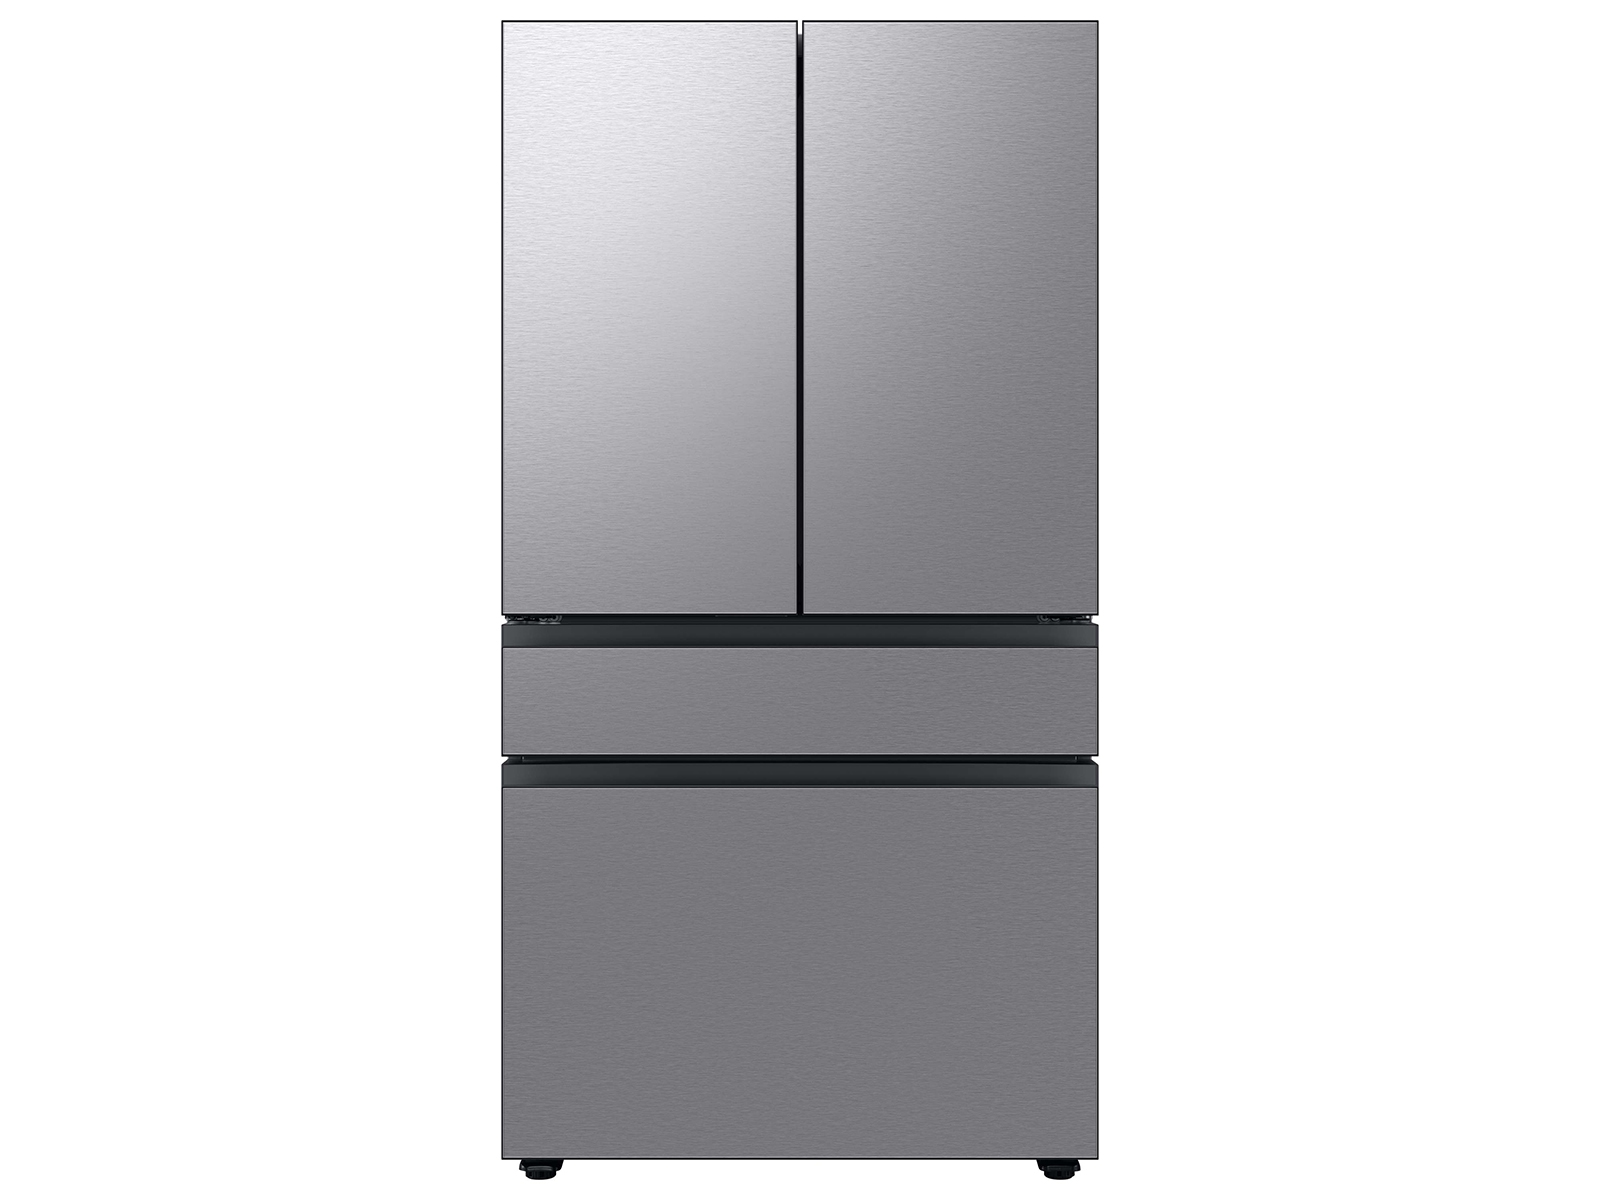 RF29BB8200QLAA | Bespoke 4-Door French Door Refrigerator (29 cu